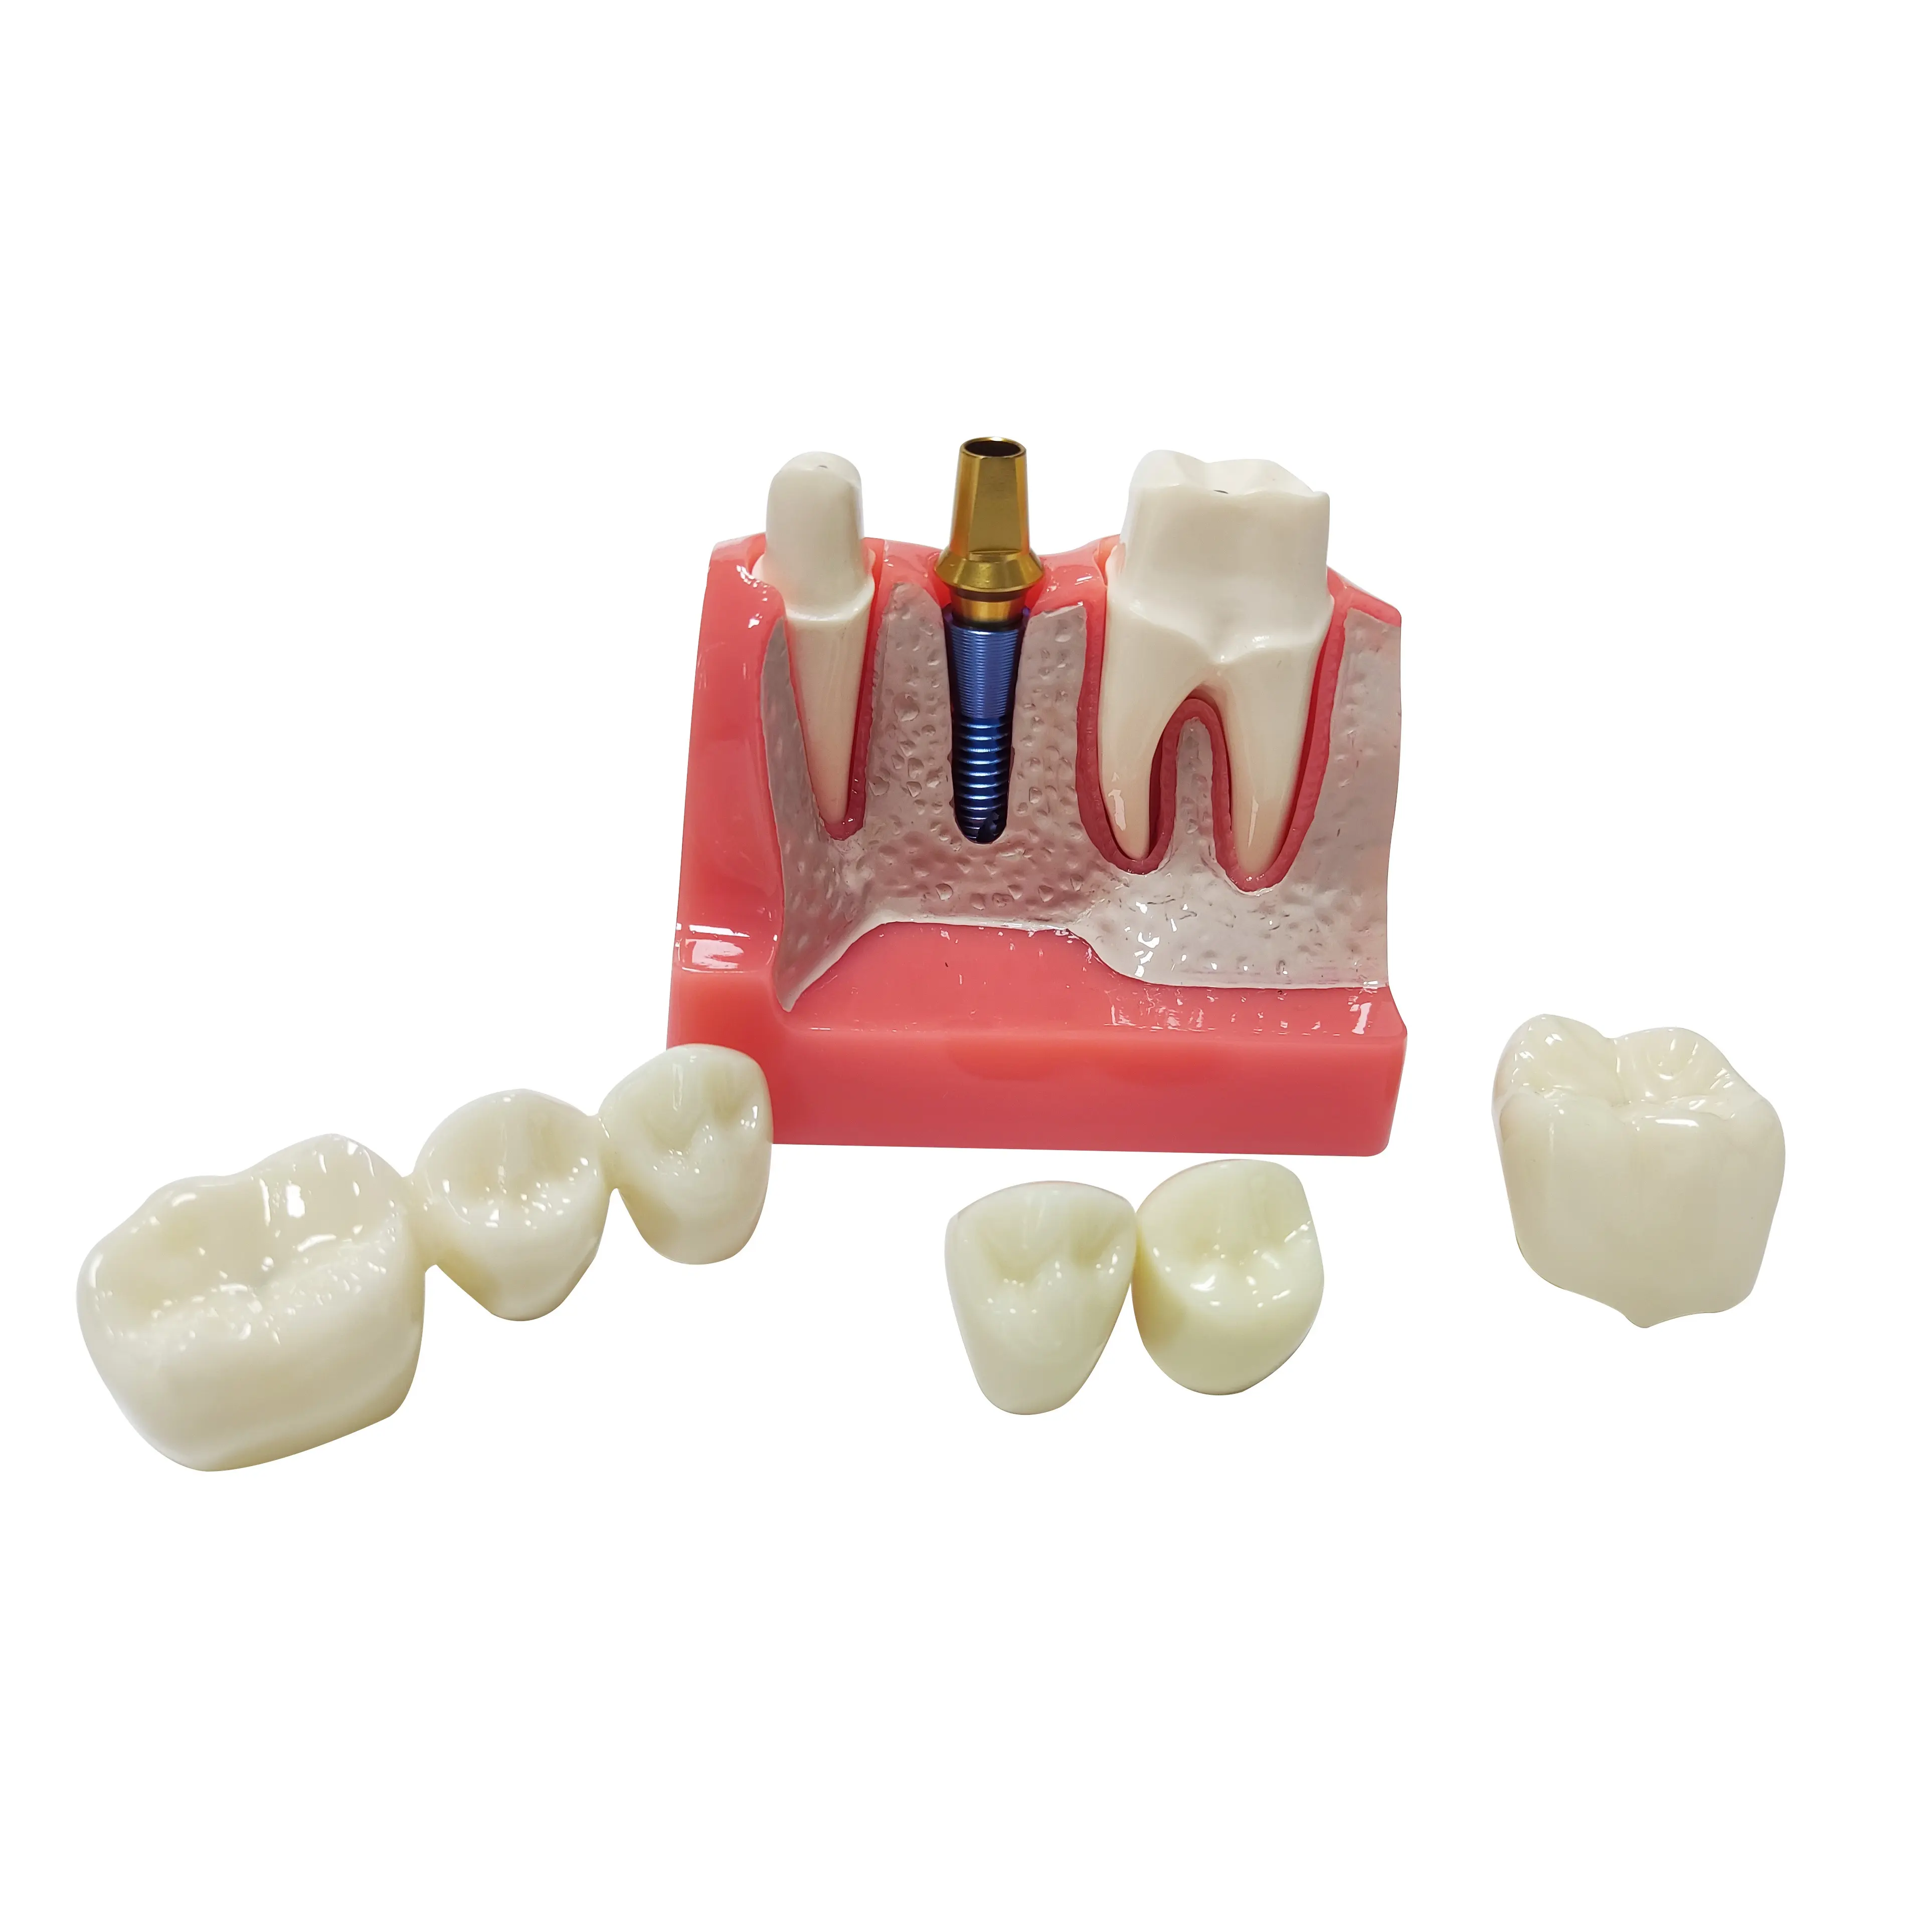 Modelo de demonstração de boca para odontologia, modelo de dentes, análise de doenças com restauração e ponte coroa, mandibular maxilar